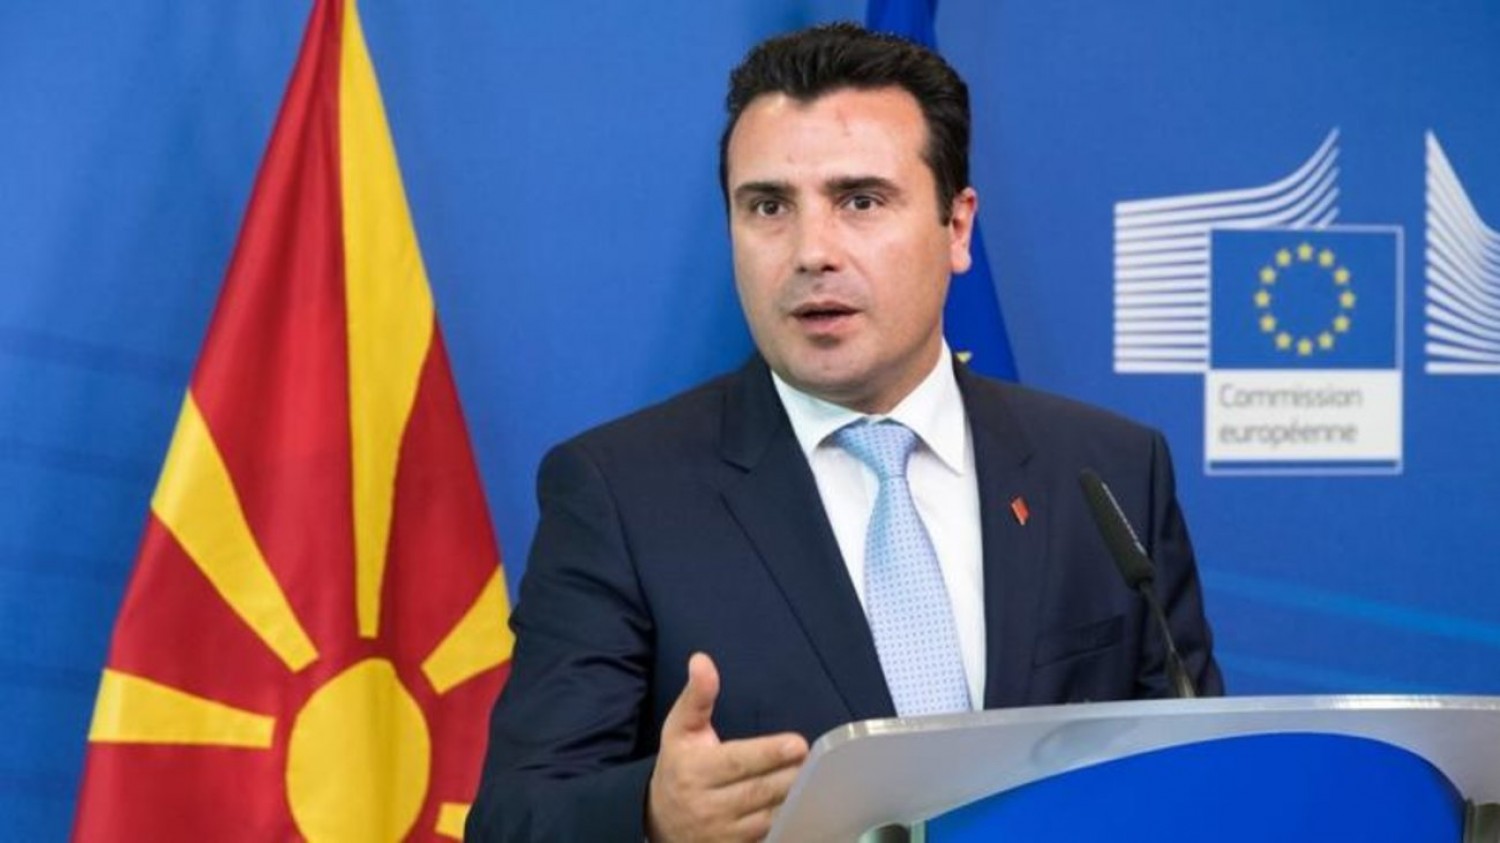 Ζάεφ σε Πενς: Κρίσιμο και ιστορικό το δημοψήφισμα για τη «Δημοκρατία της Μακεδονίας»